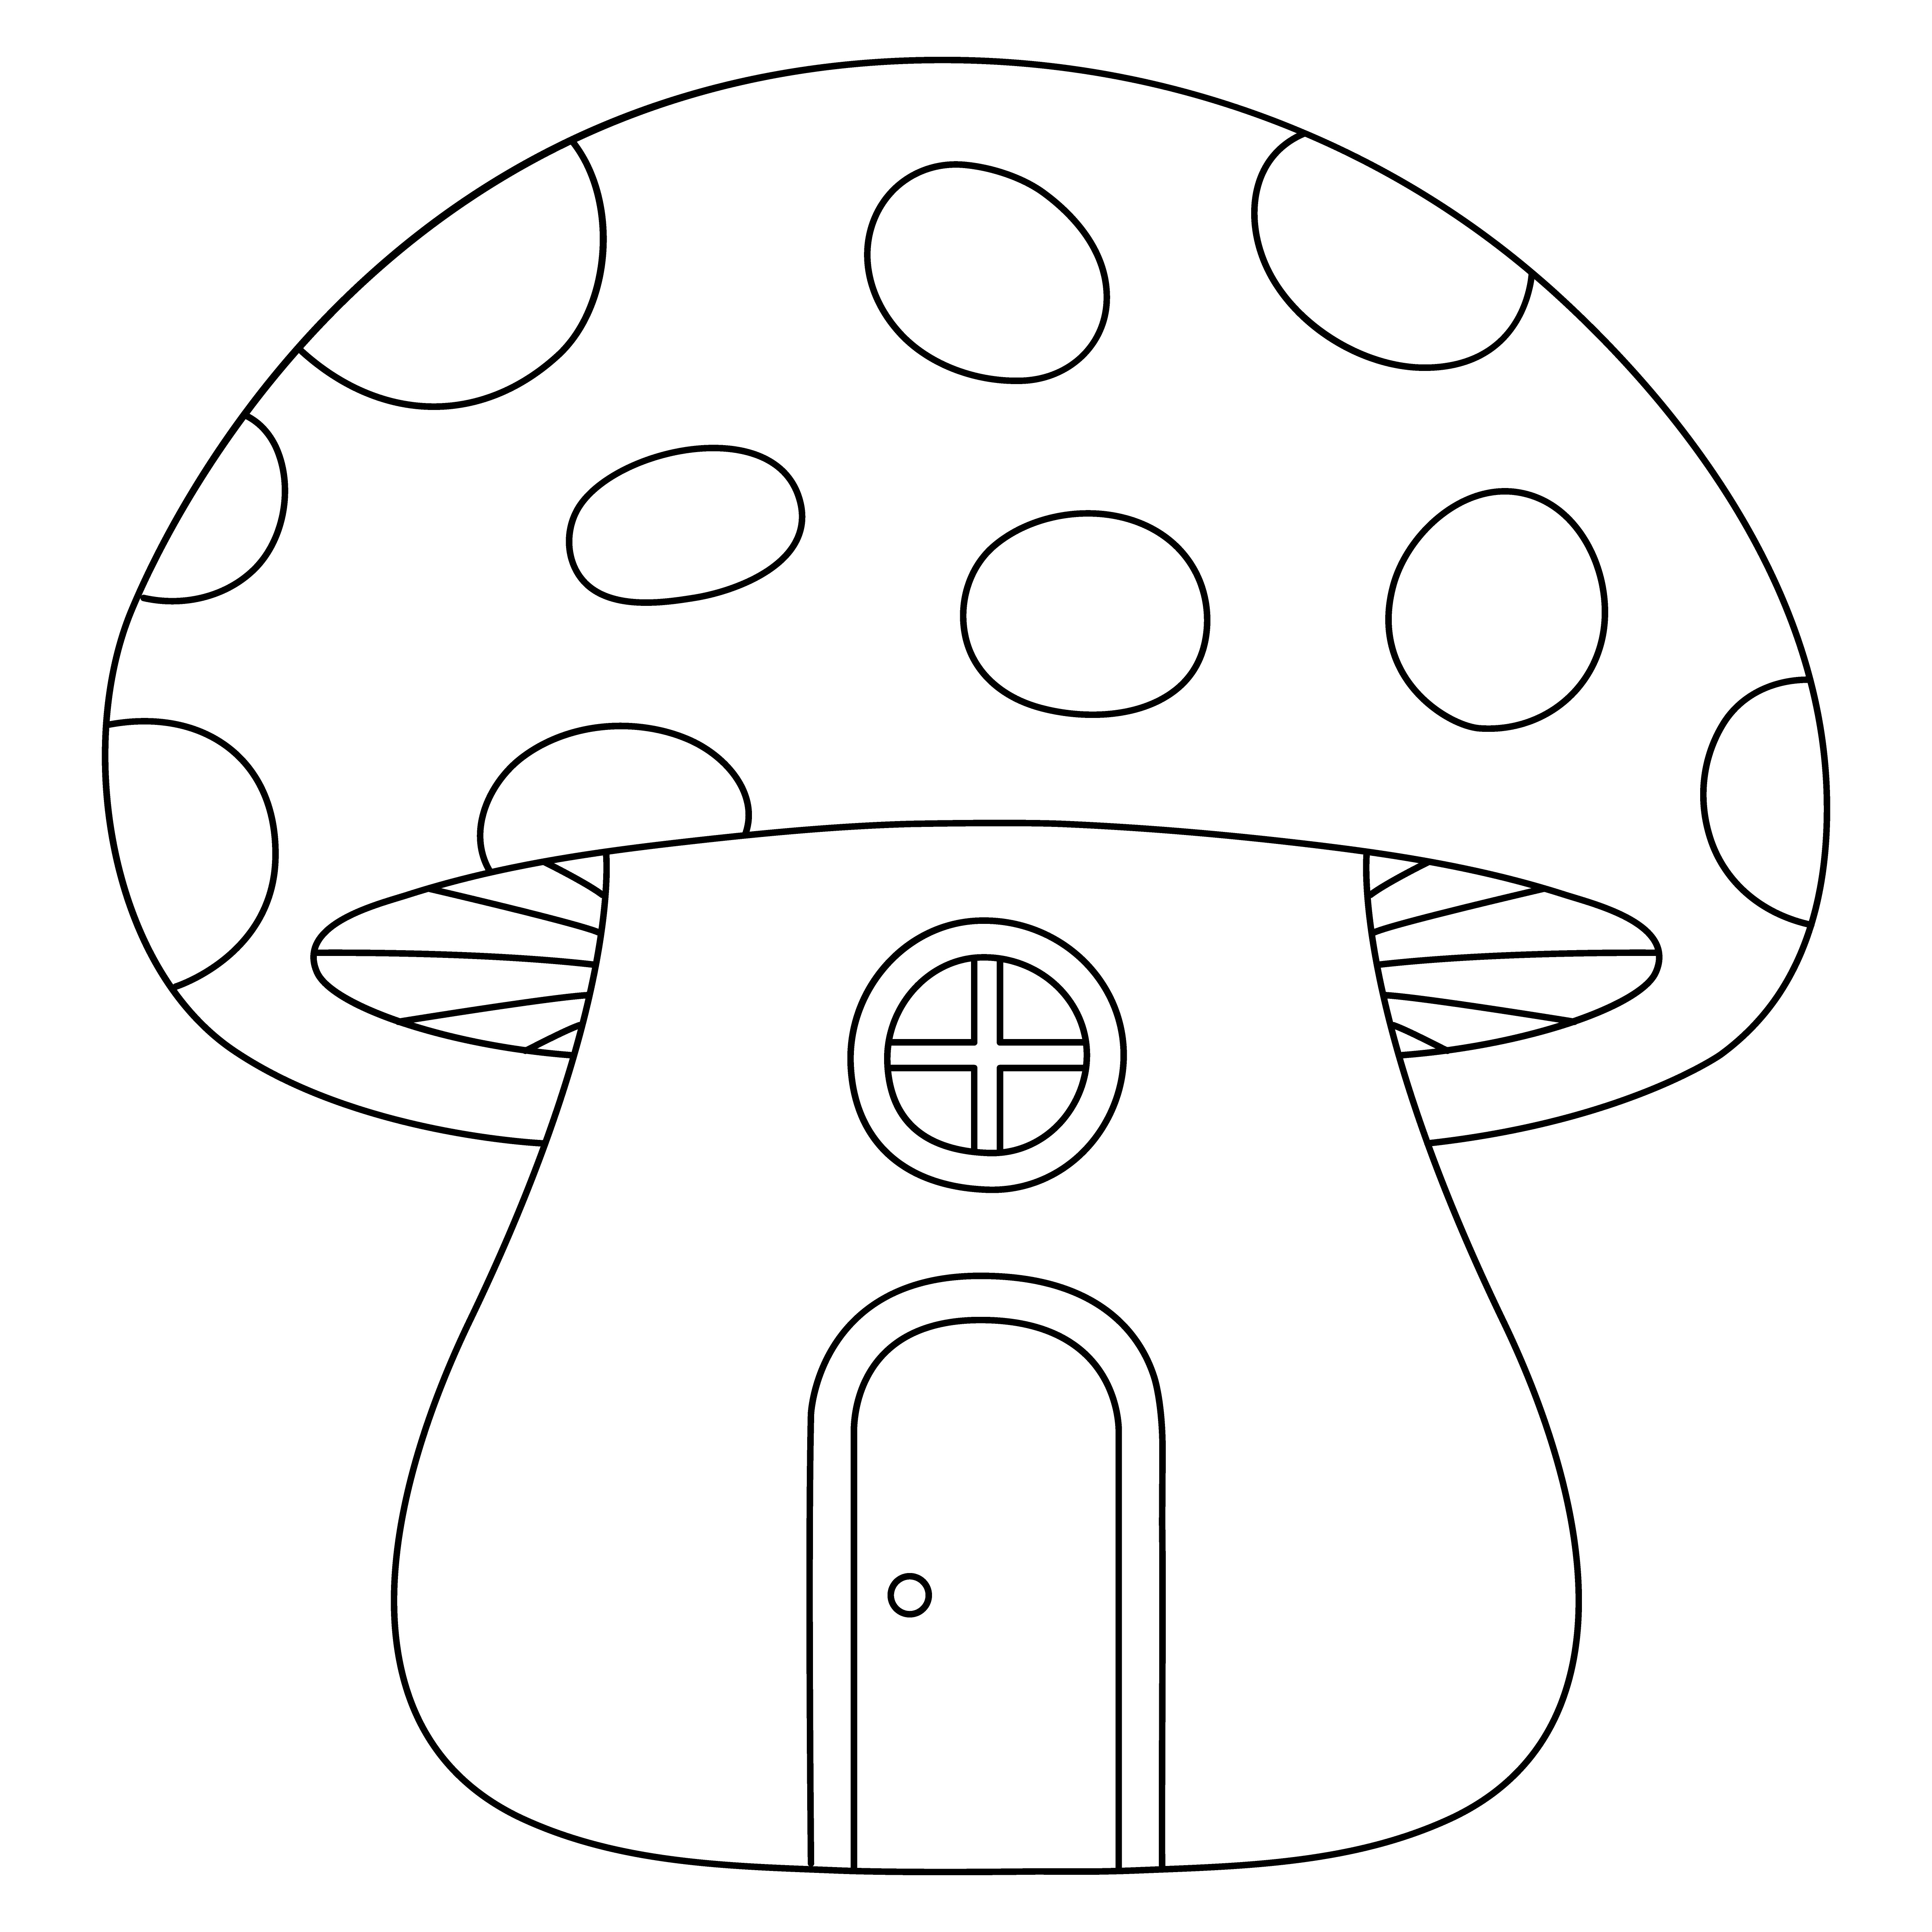 Раскраска большой домик гриб с дверью и окошком формата А4 в высоком качестве